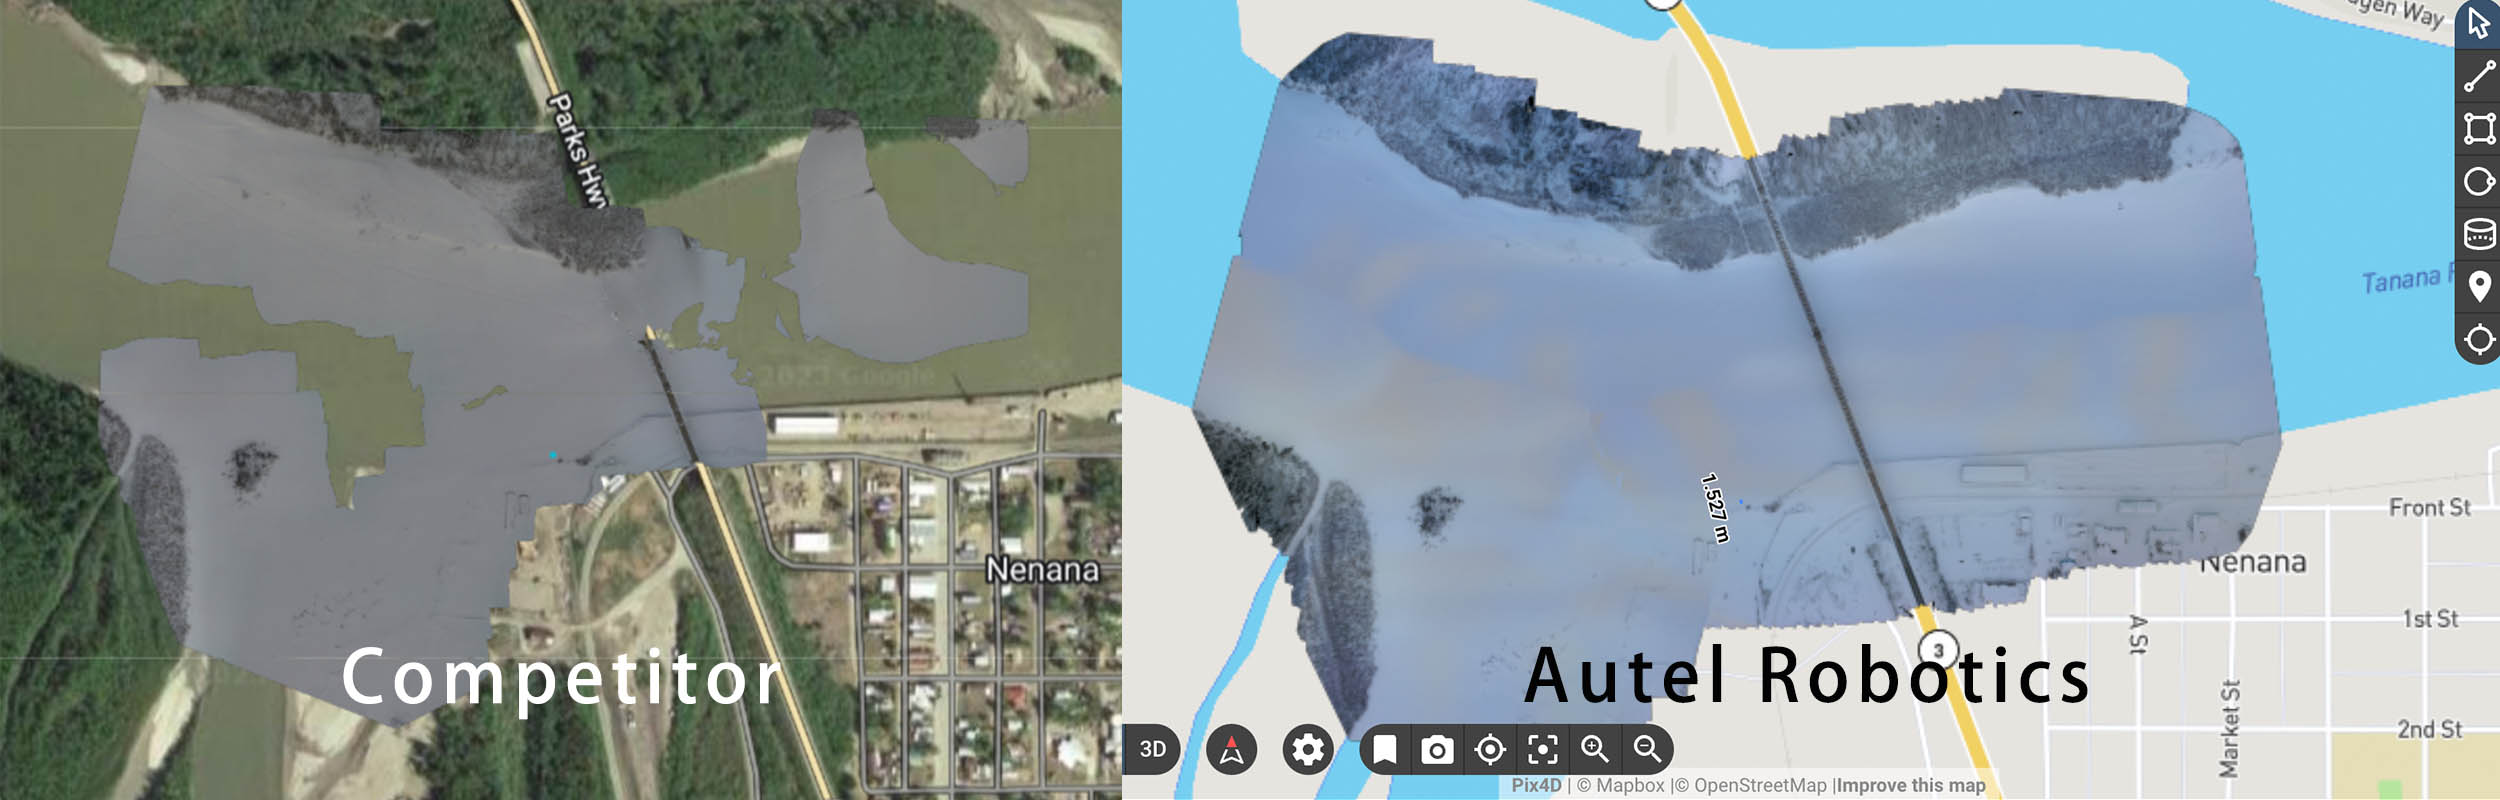 Autel drone Pix4D processed image vs Other drone Pix4D processed image